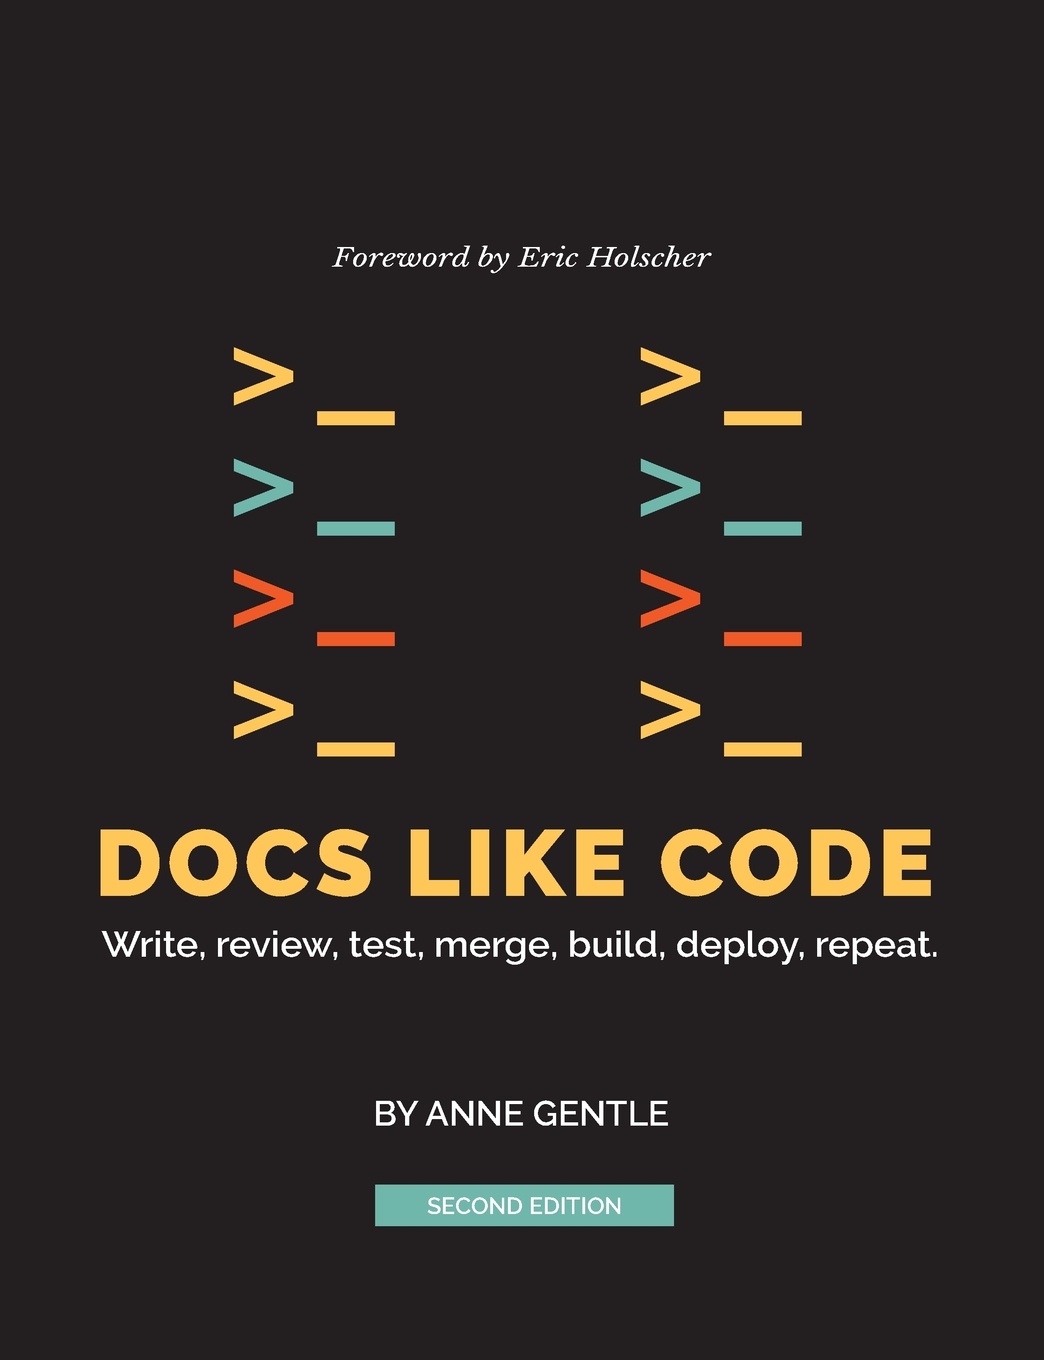 Code like me. Docs like code. Like coding.